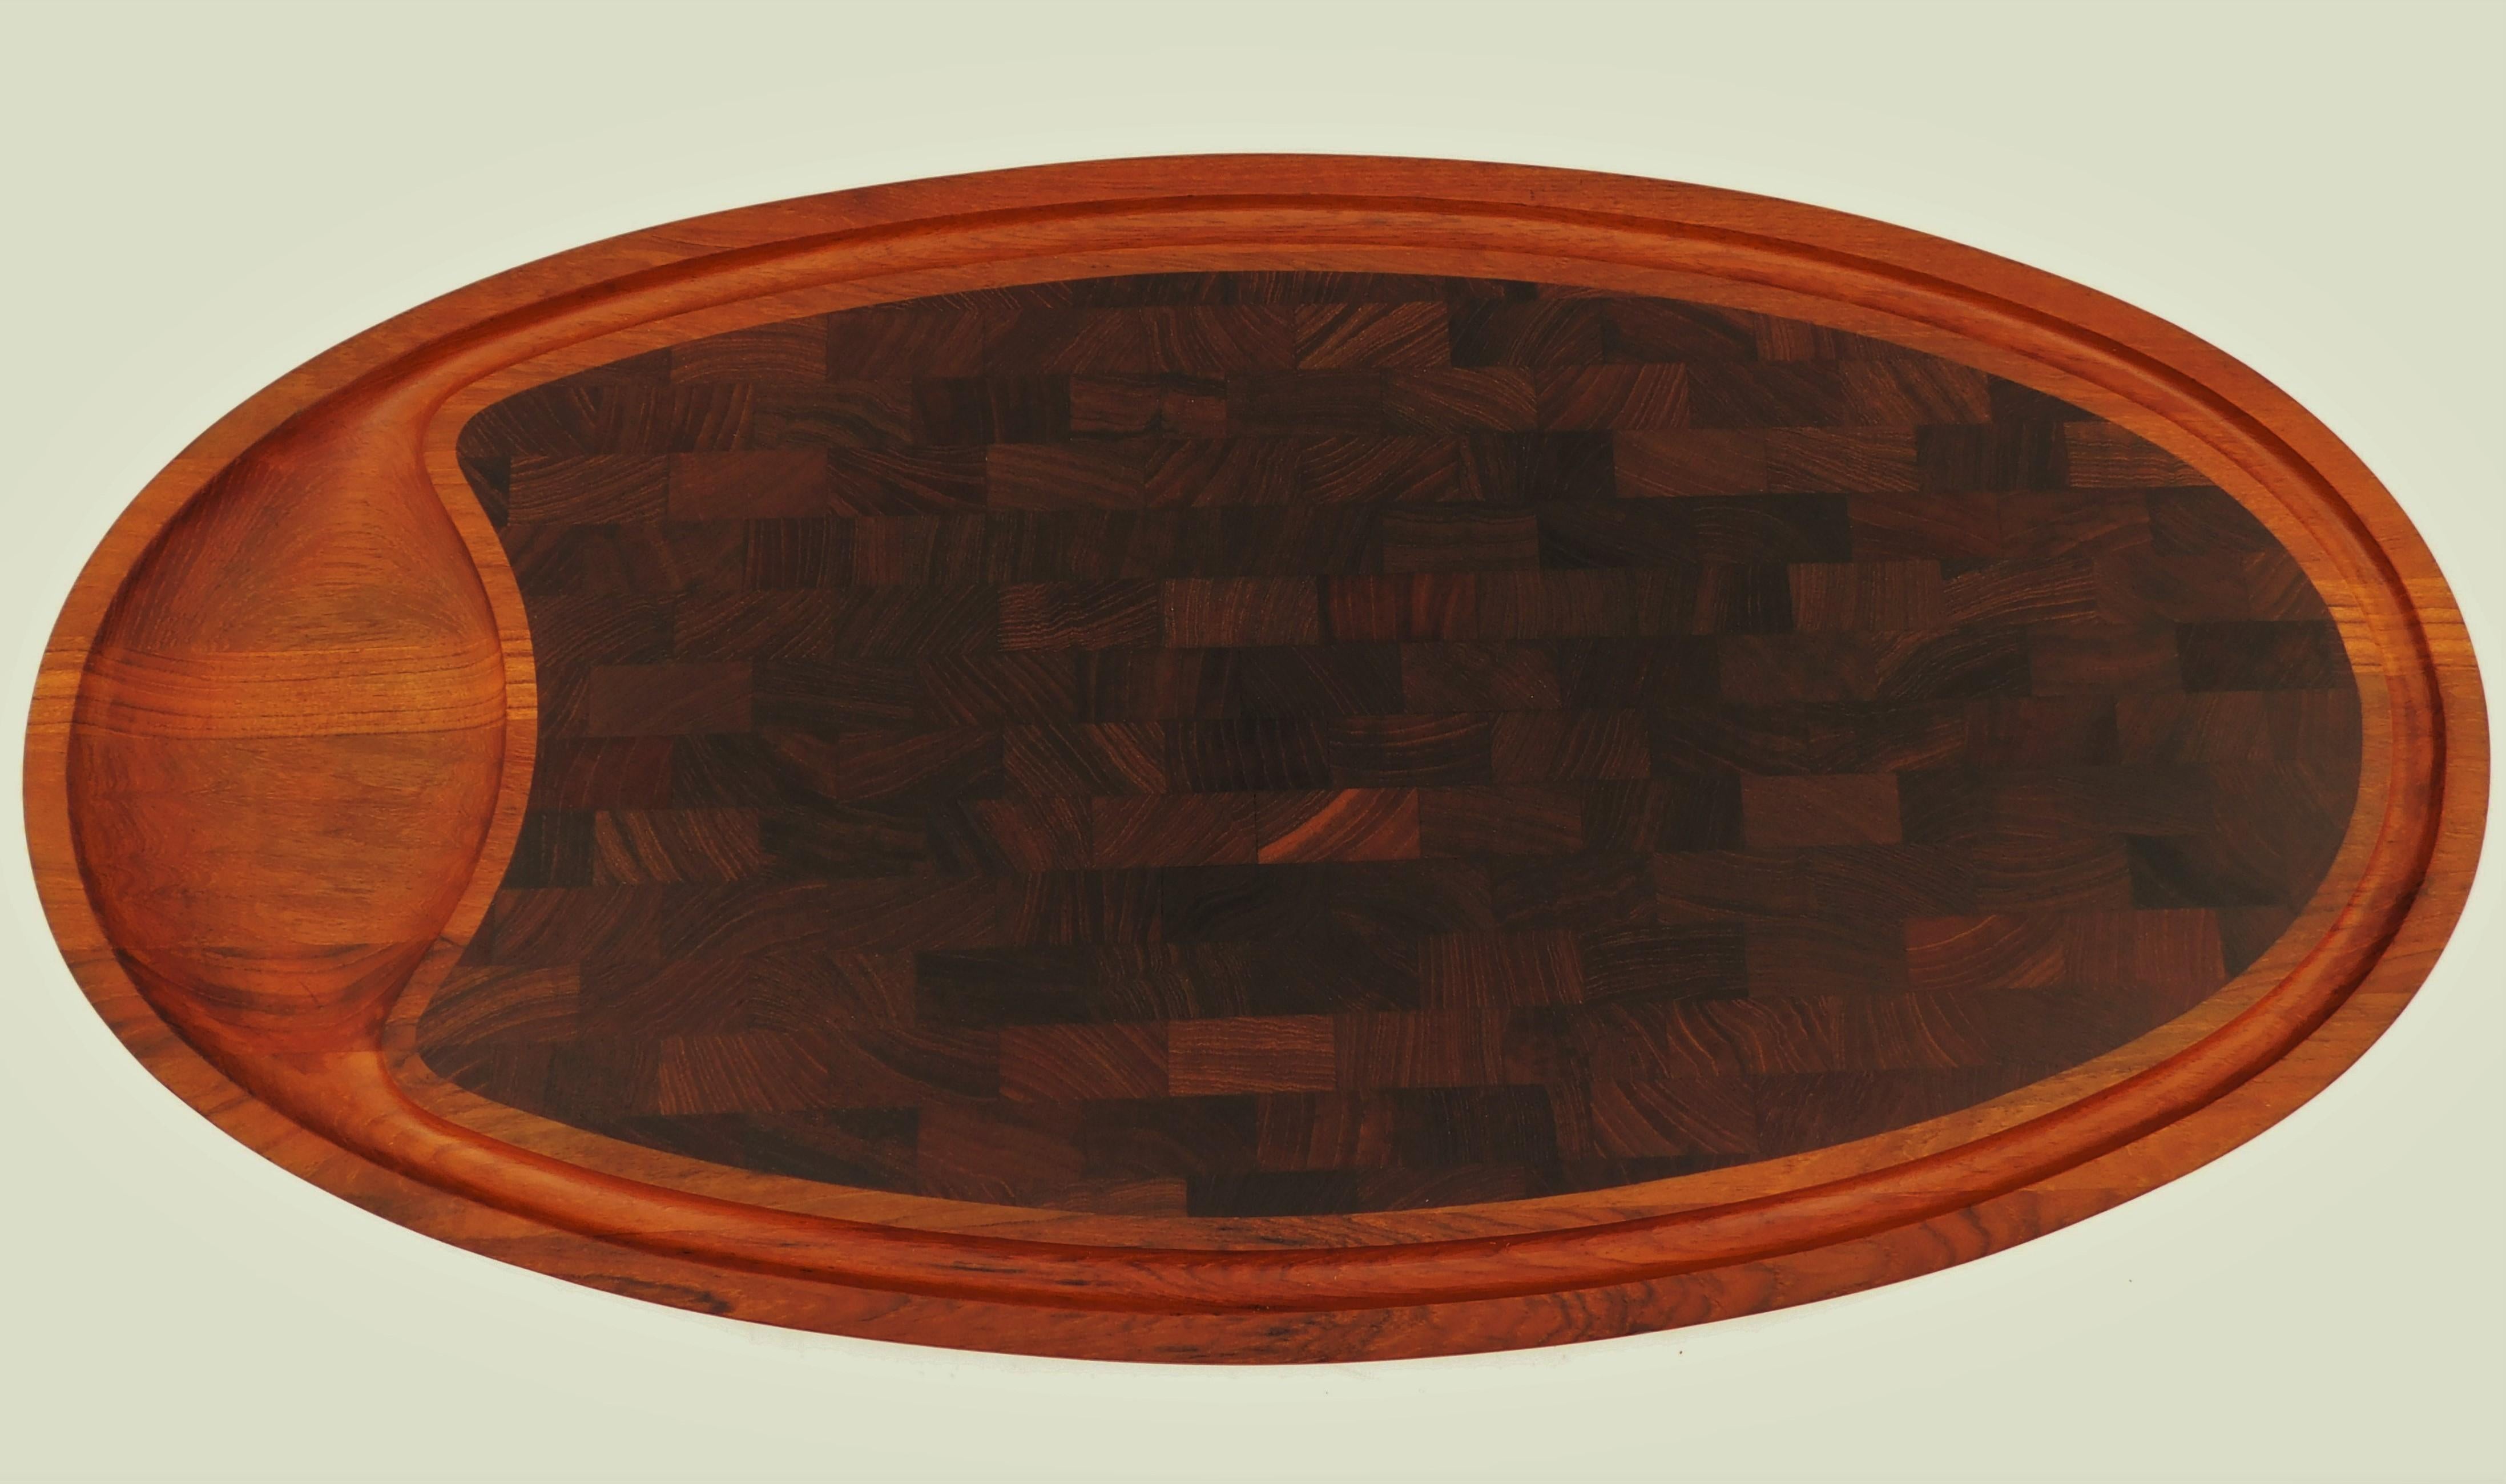 Scandinavian Modern Large Dansk Design Teak Vintage Cutting Board Tray Platter by Jens H. Quistgaard For Sale